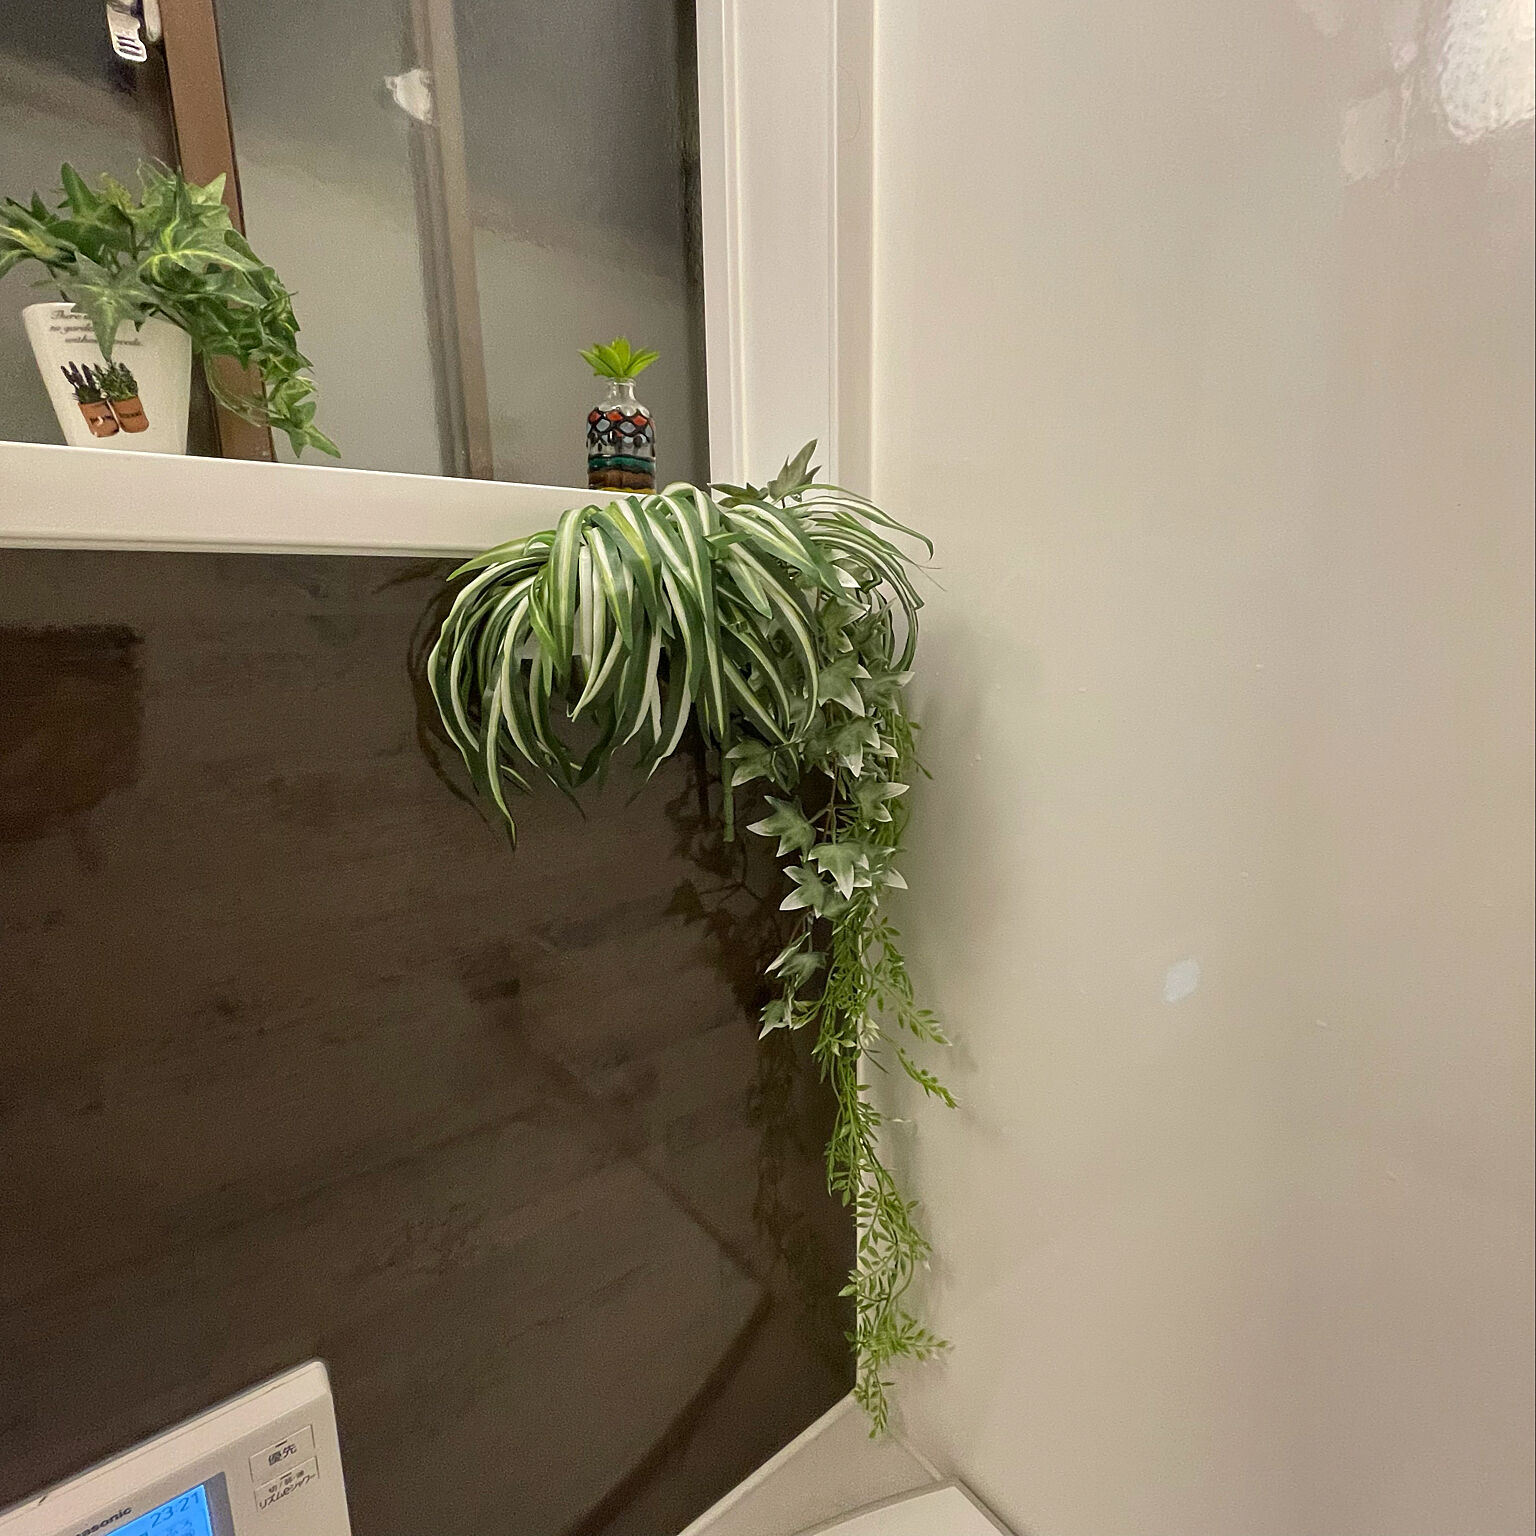 「棚やスペースがなくてもOK♪浴室にフェイクグリーンを飾るテクニック」 by sakuranboさん